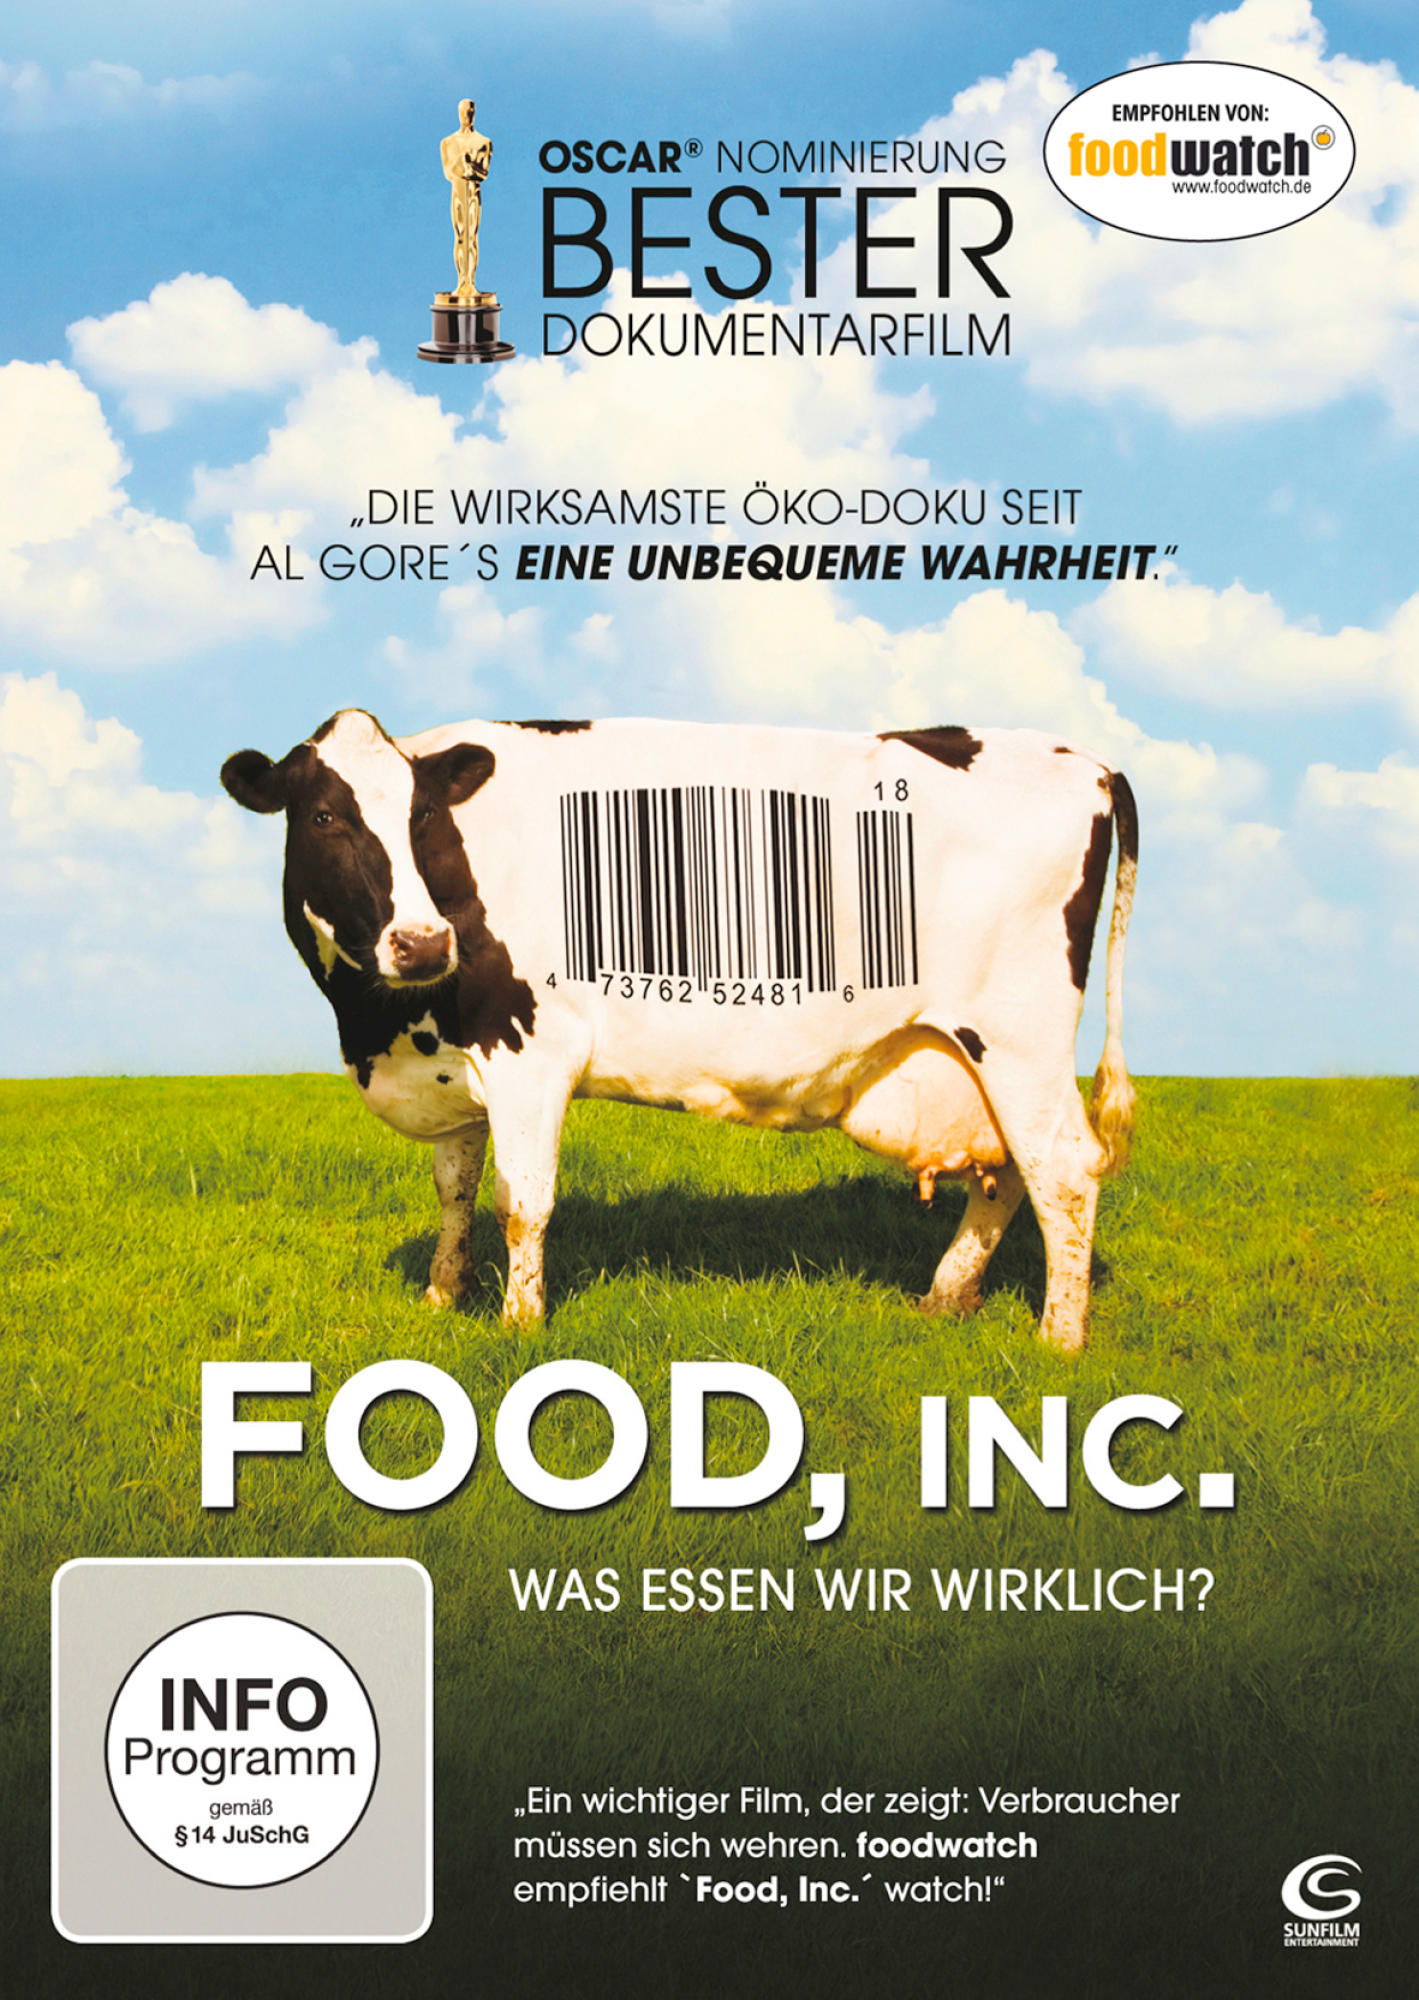 Food, Inc. - essen DVD Was wir wirklich